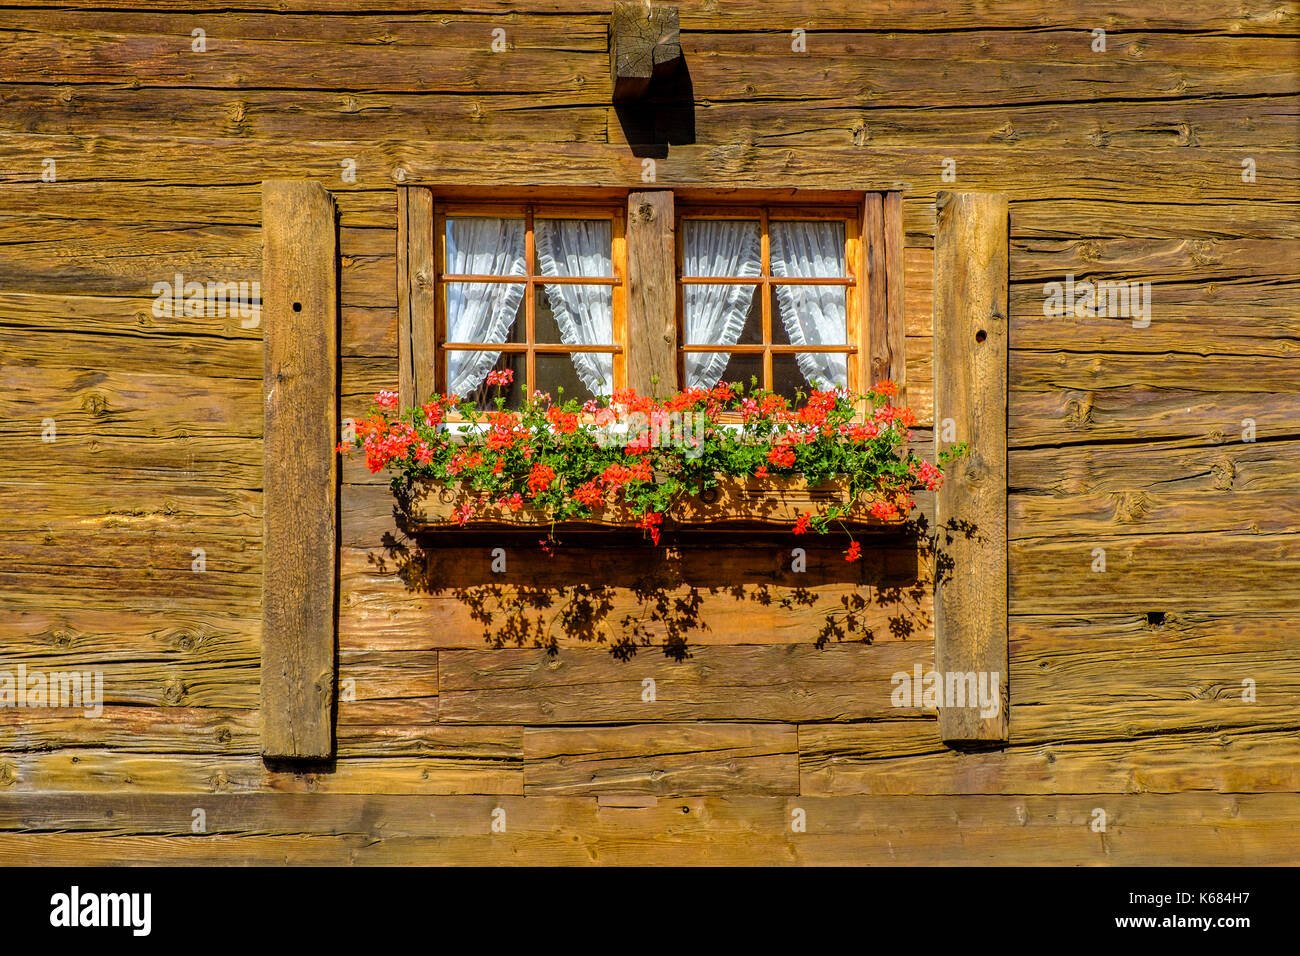 Das kleine Fenster von einem alten Bauernhaus, mit bunten Blumen geschmückt  Stockfotografie - Alamy